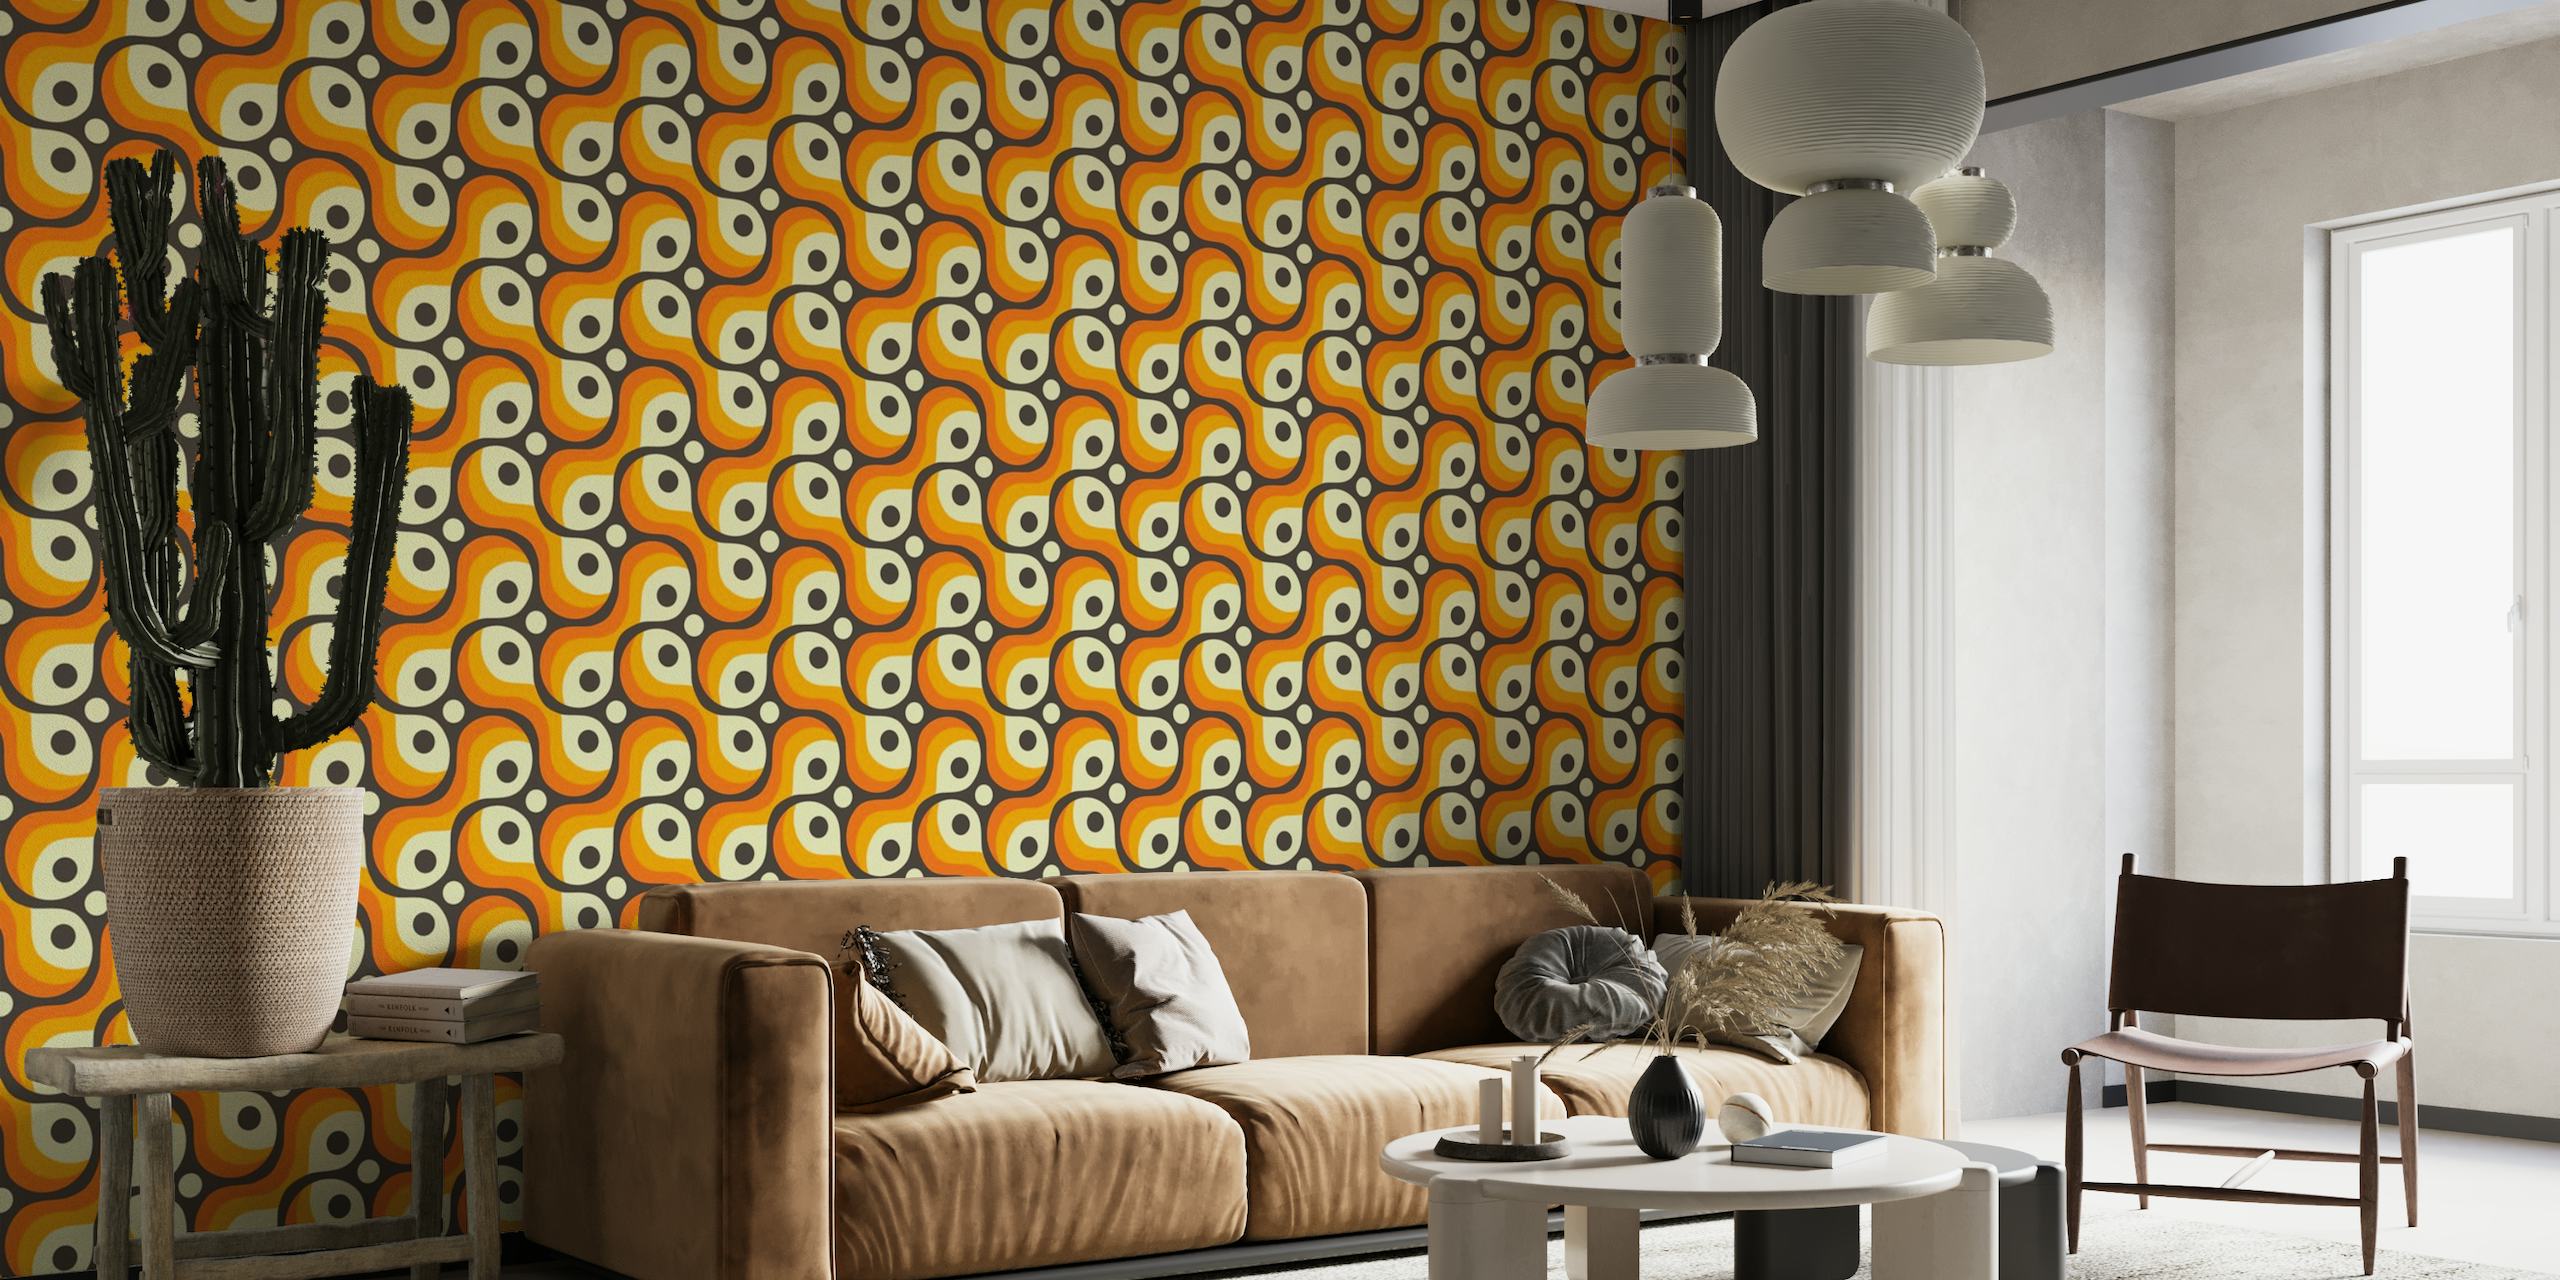 Fotomural vinílico de parede com formas retrô abstratas de inspiração vintage em laranja, creme e preto